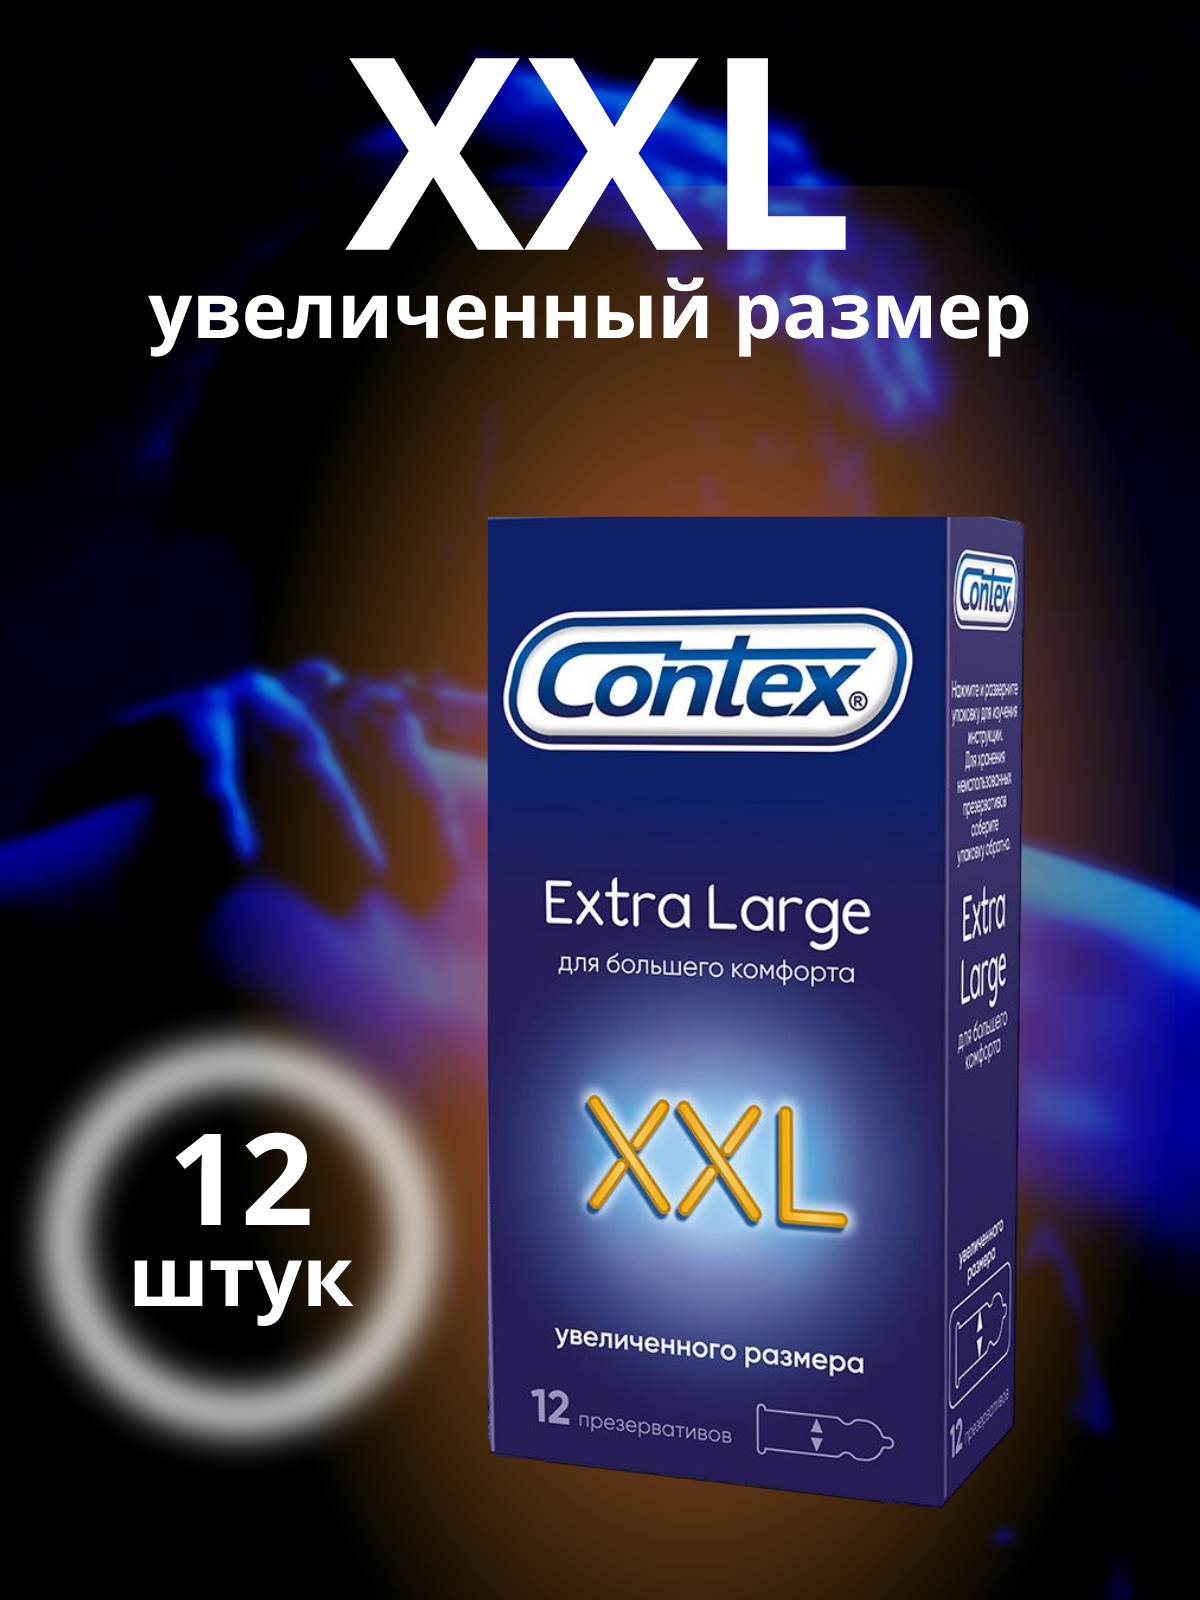 Презервативы Contex (Контекс) Extra Large увеличенного размера XXL 12 шт. ЛРС Продактс Лтд - фото №14